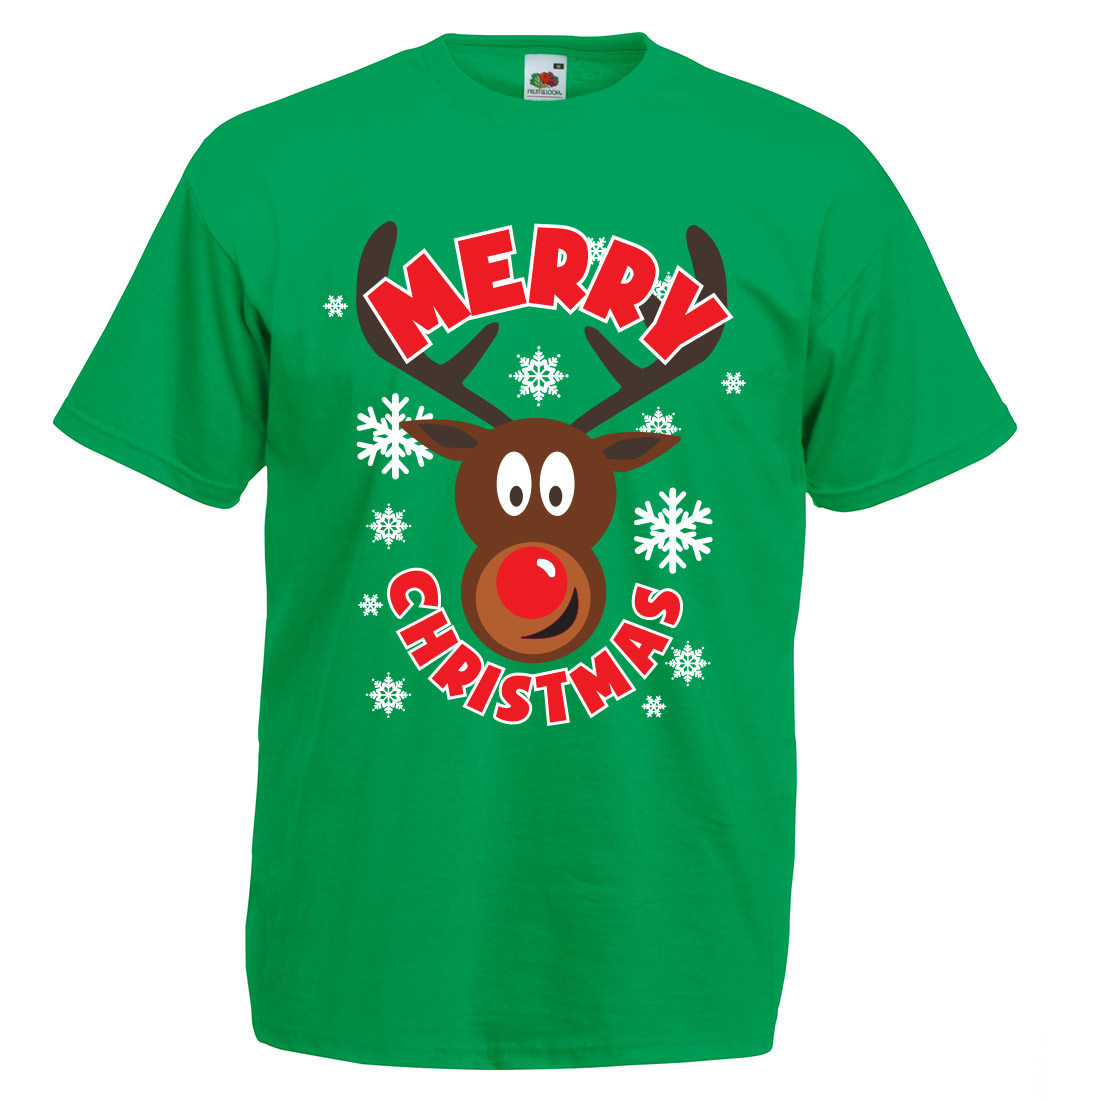 TeeDaddy T Shirt Printing Christmas TShirt TeeDaddy